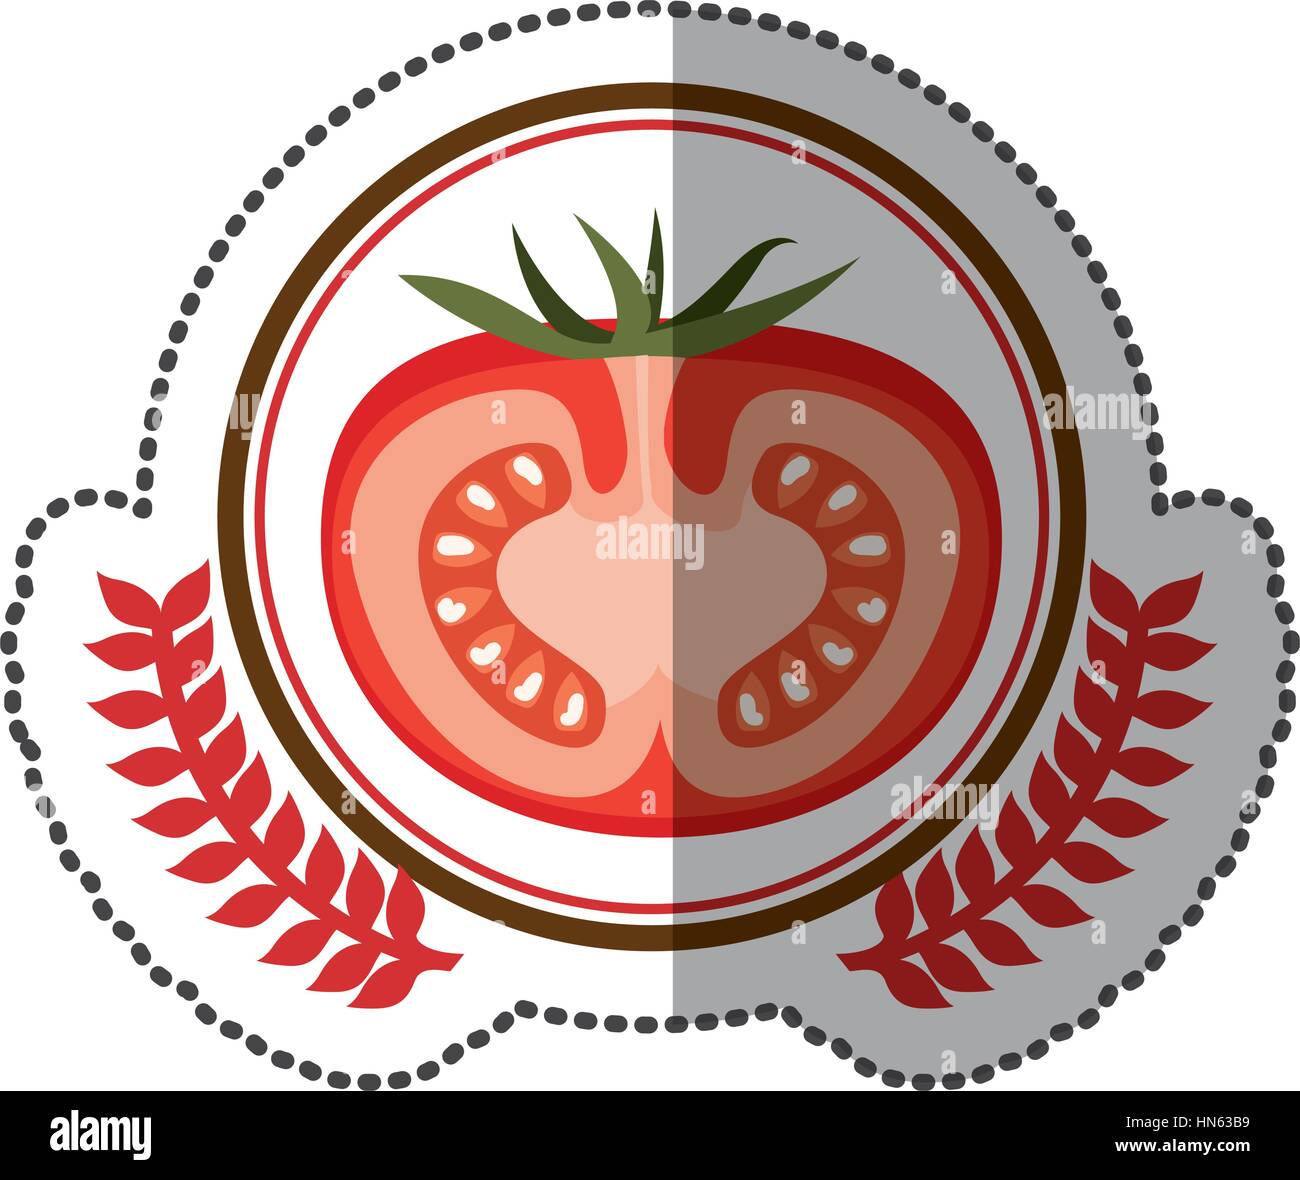 symbol tomato signal icon design, vector illstration Stock Vector